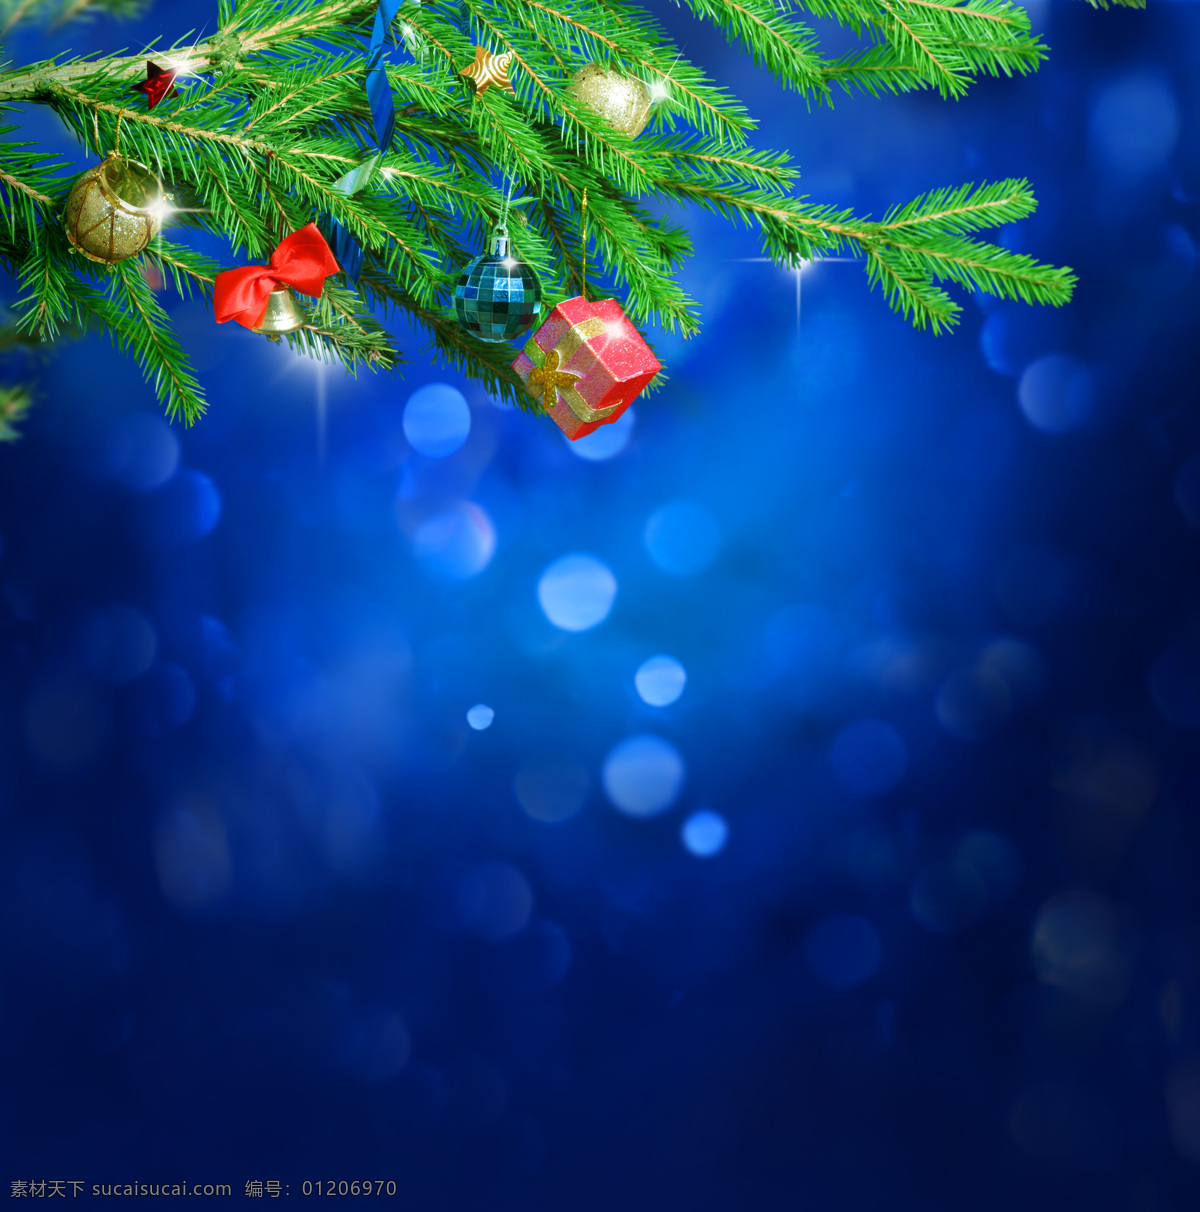 圣诞背景图 梦幻光斑 圣诞球 吊球 梦幻背景 圣诞装饰 圣诞节 圣诞卡片 圣诞素材 节日庆典 生活百科 蓝色